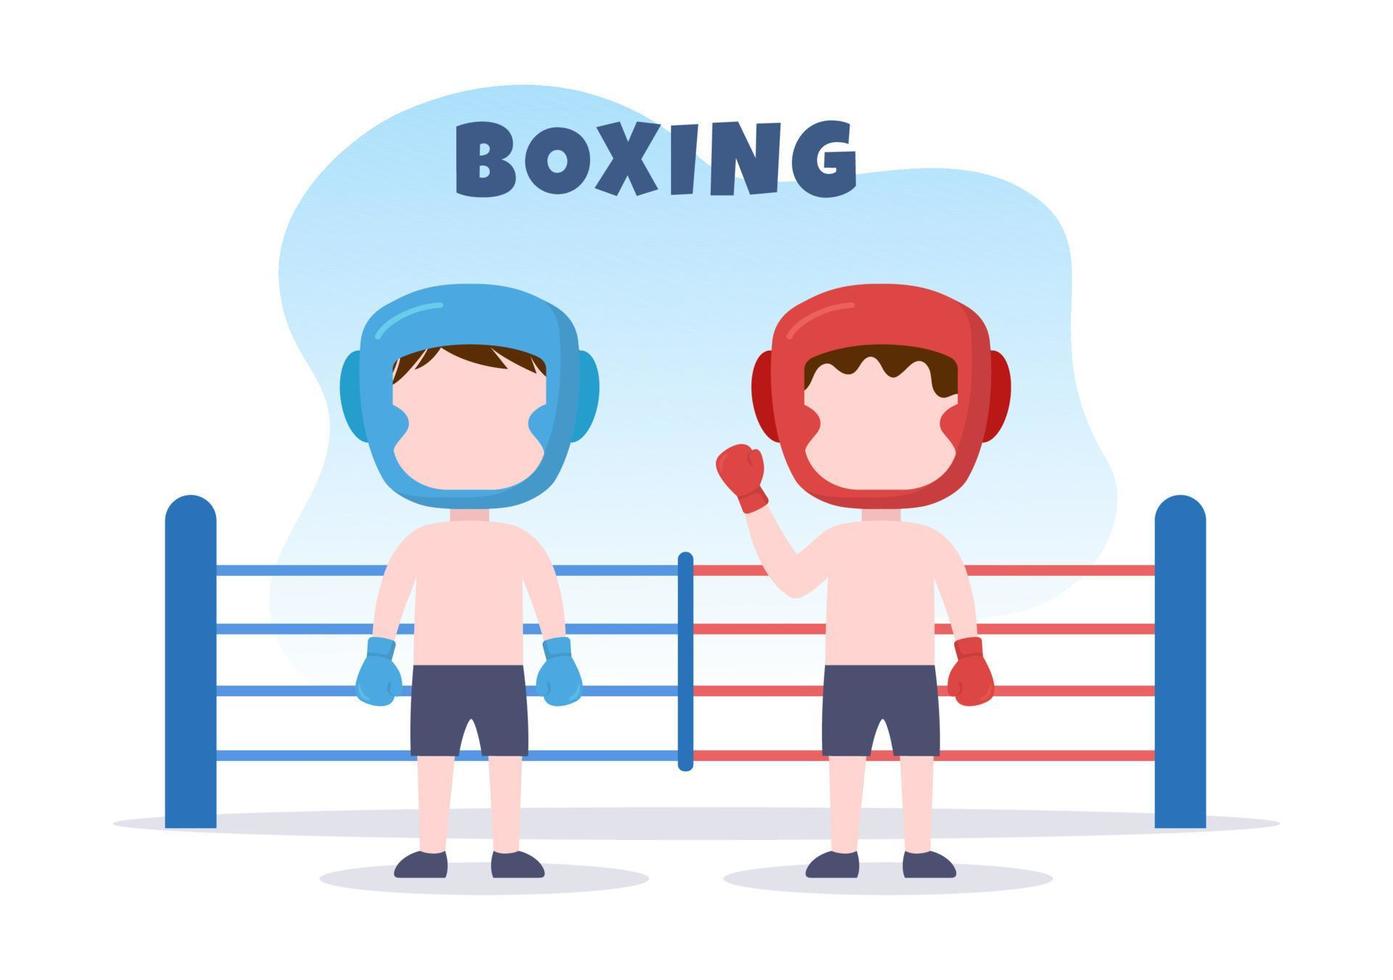 professionele bokssport met bokser, ring, riem, bokszakken, rode handschoenen en helm tijdens wedstrijden, sparren of oefenen in platte cartoonillustratie vector